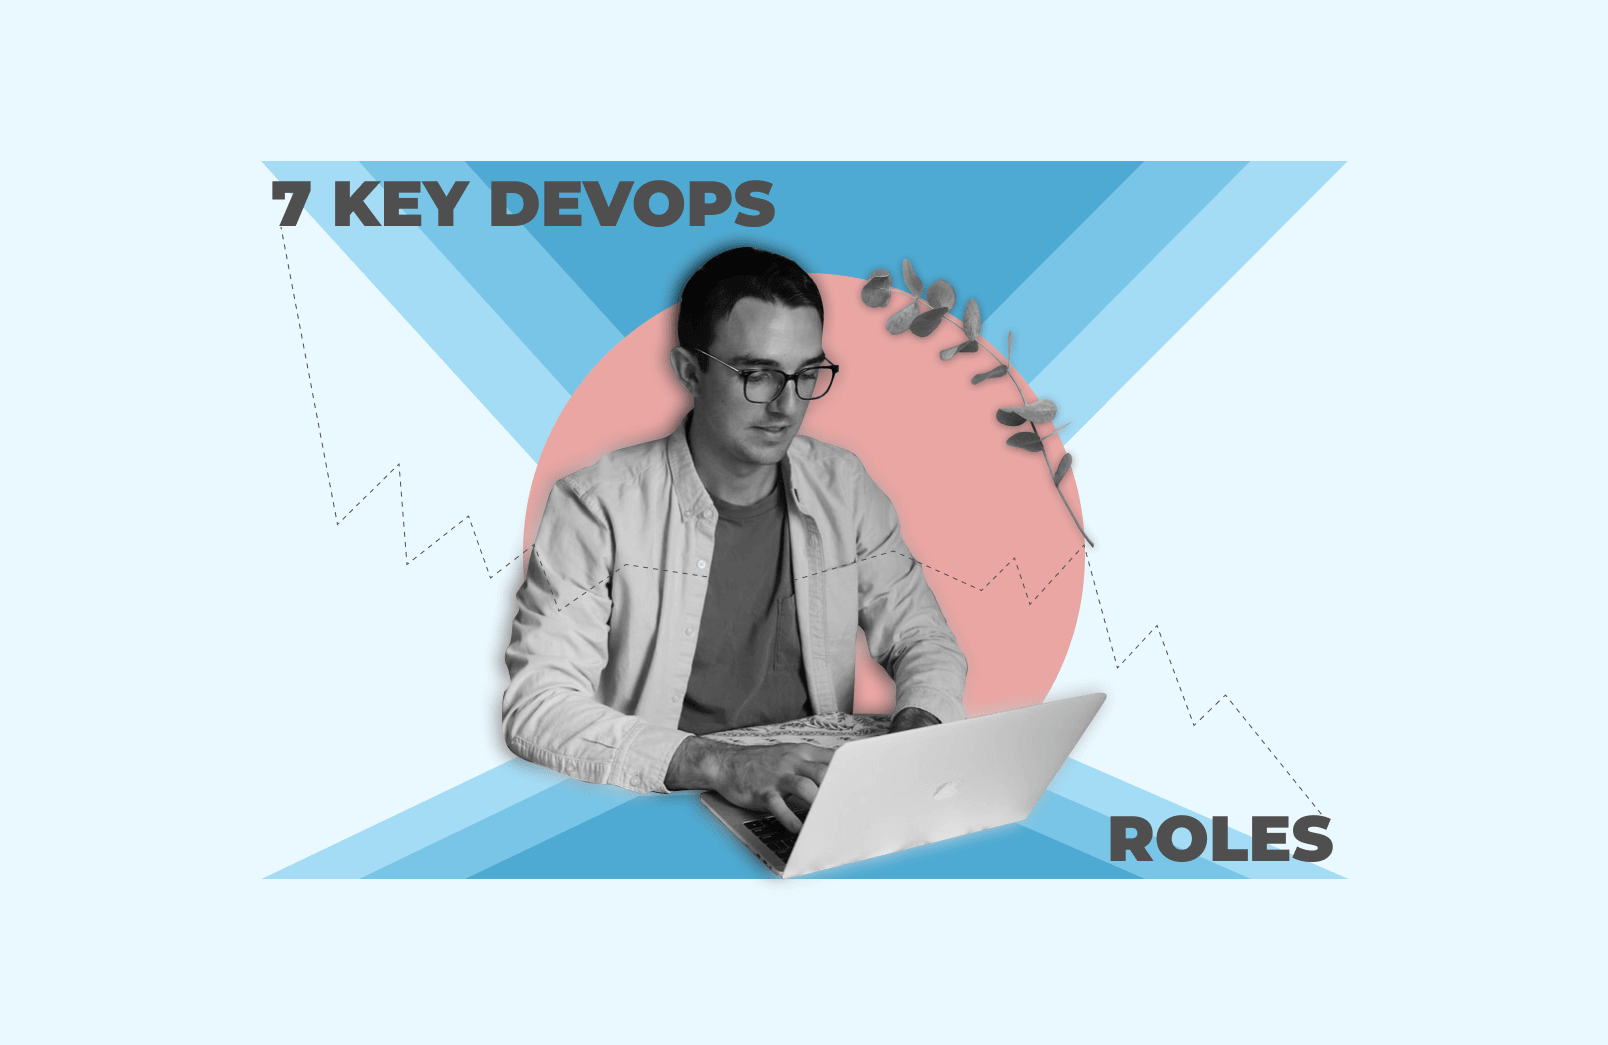 7 key DevOps roles